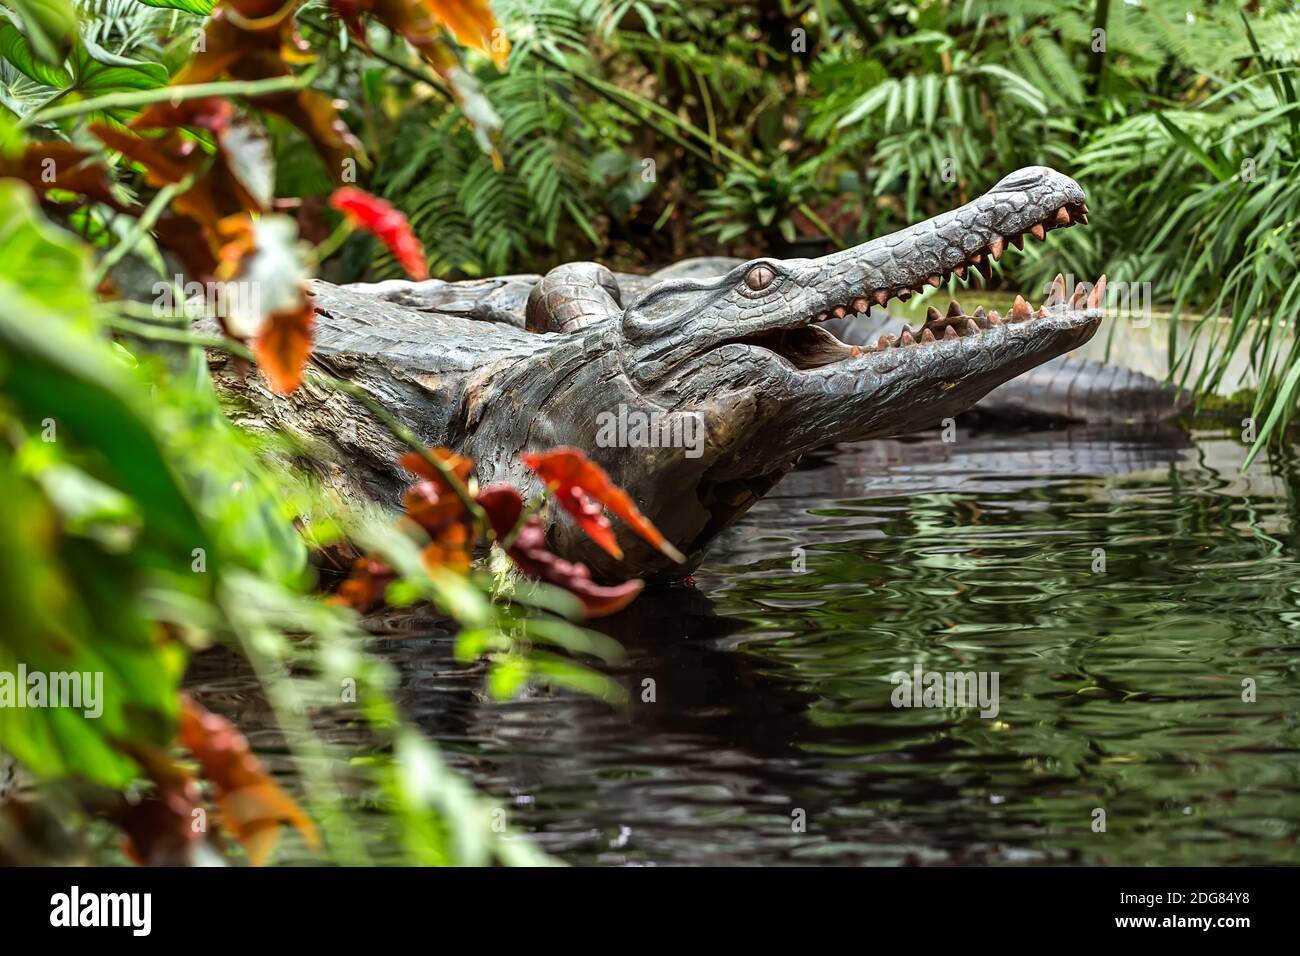 Sculpture de crocodile dans l'eau Banque D'Images